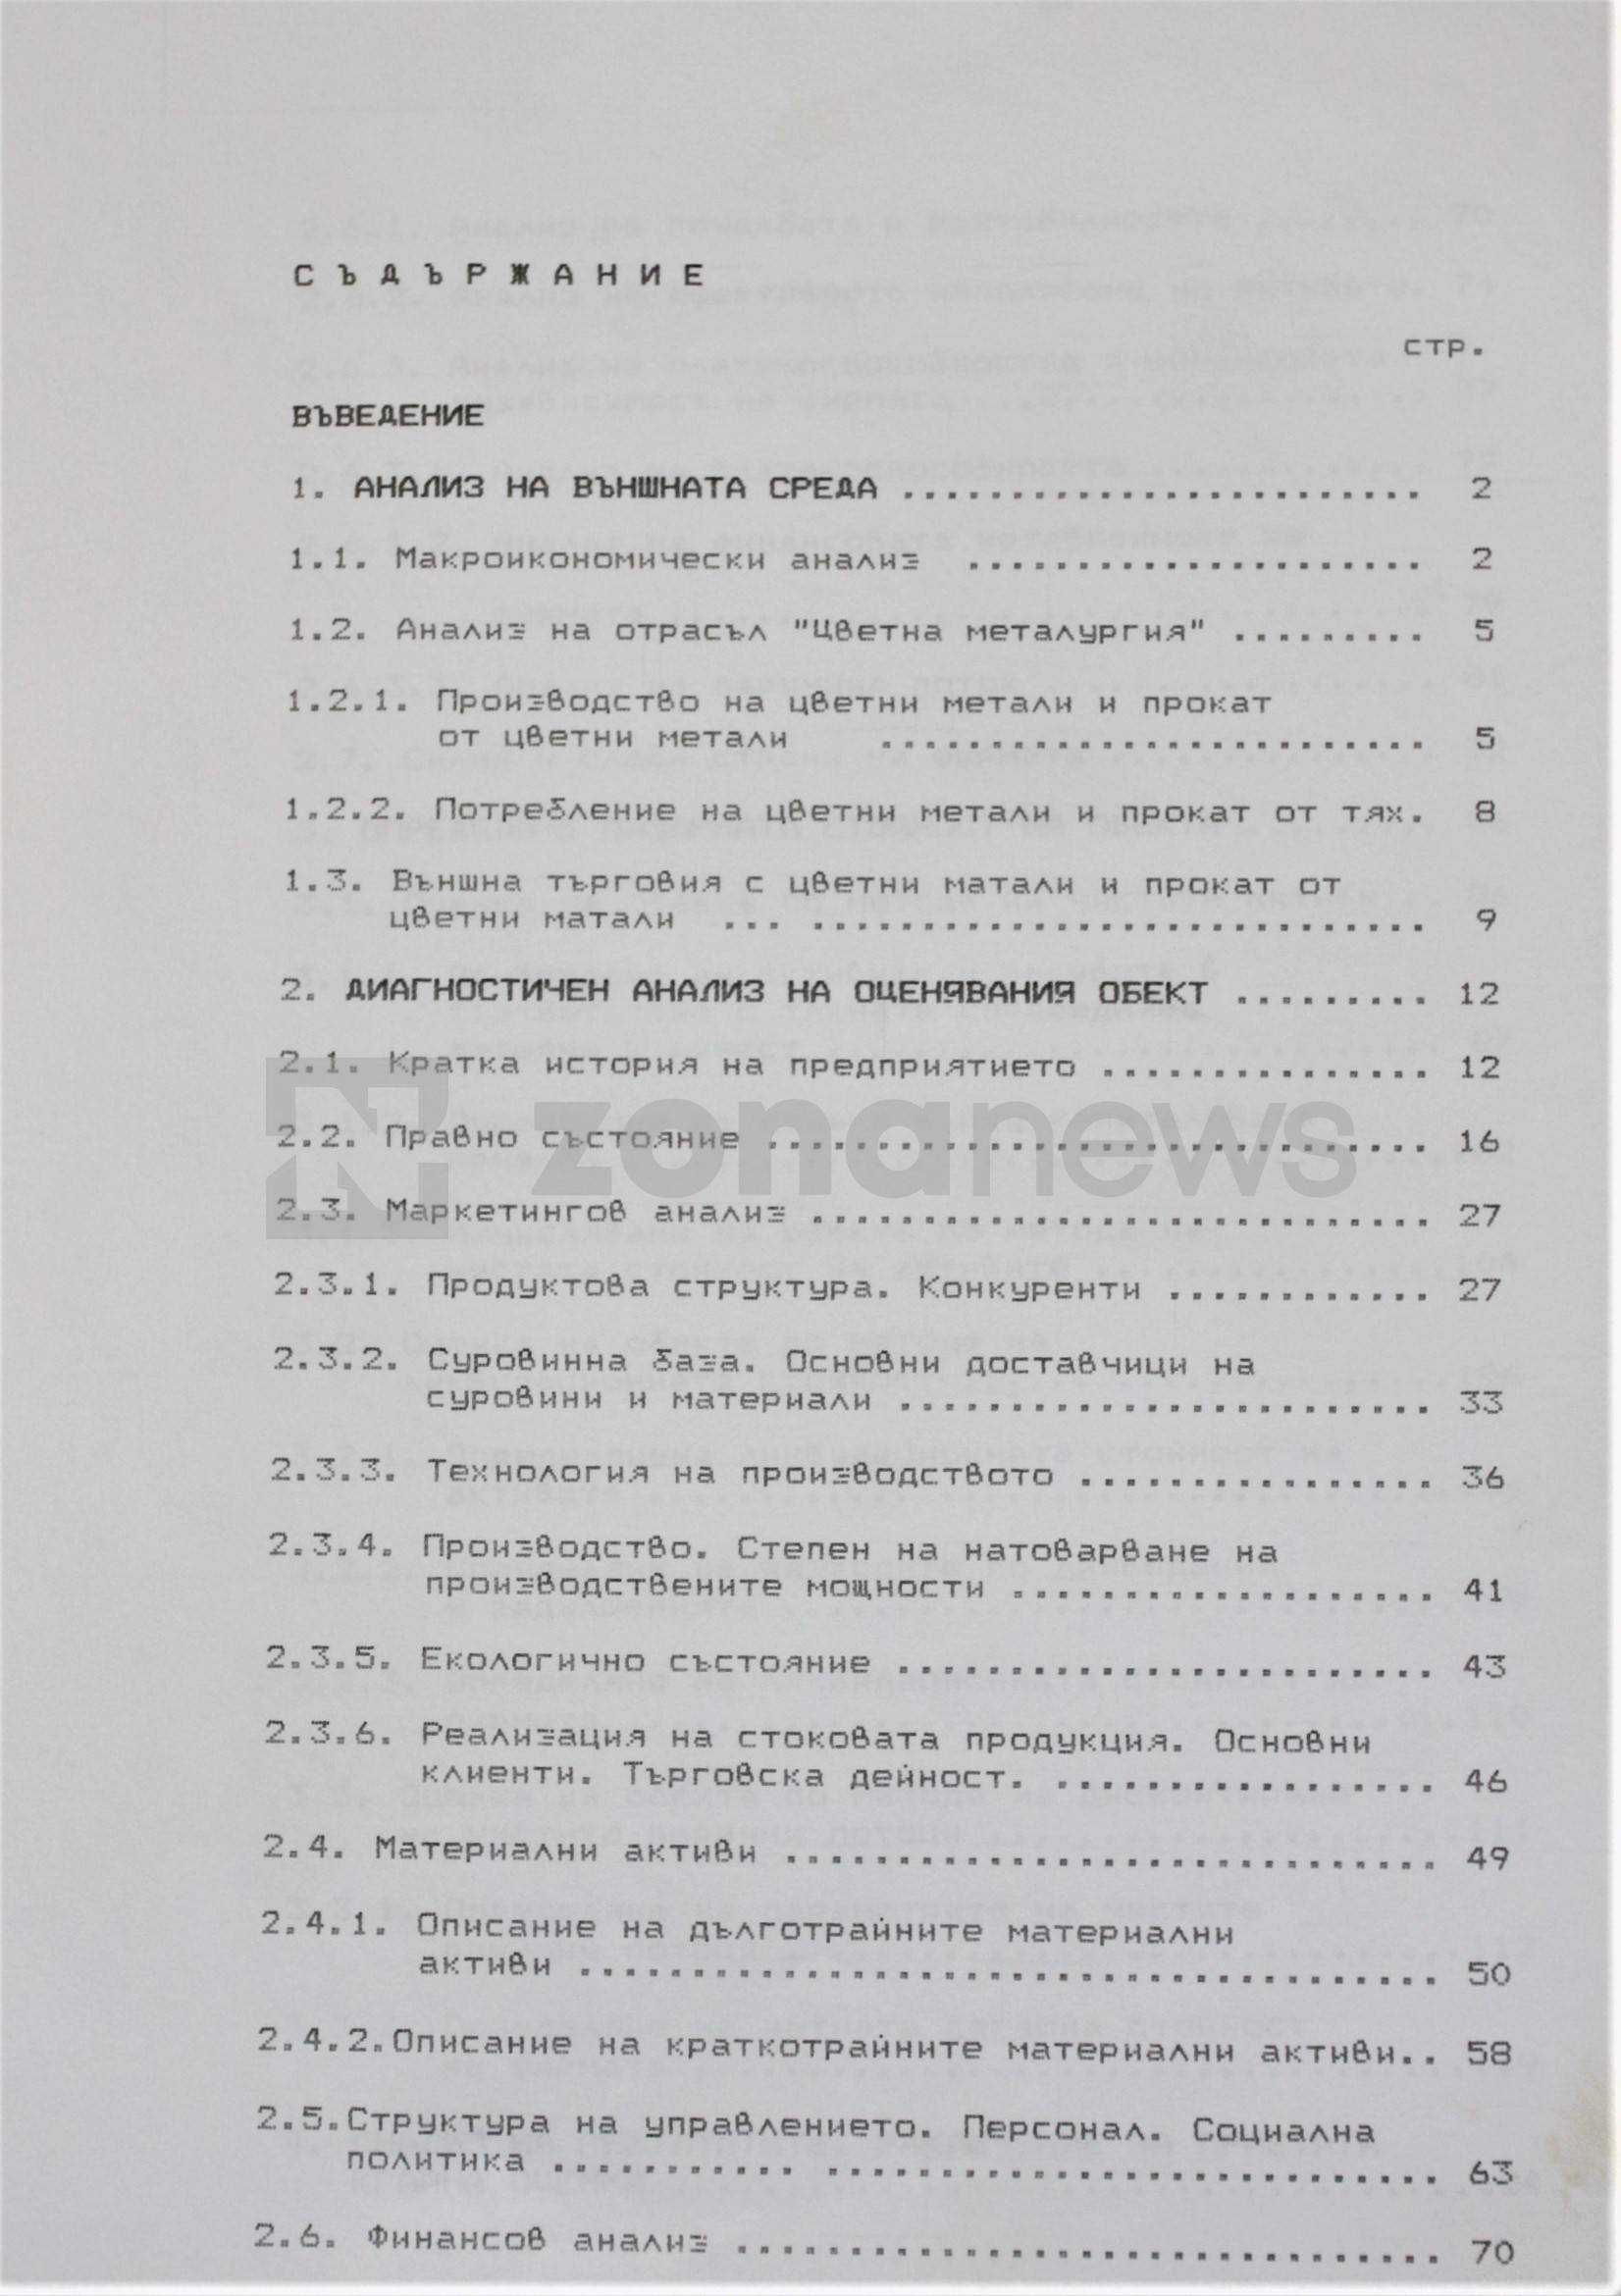 Язовир Душанци е част от дълготрайните материални активи на МДК-Пирдоп 